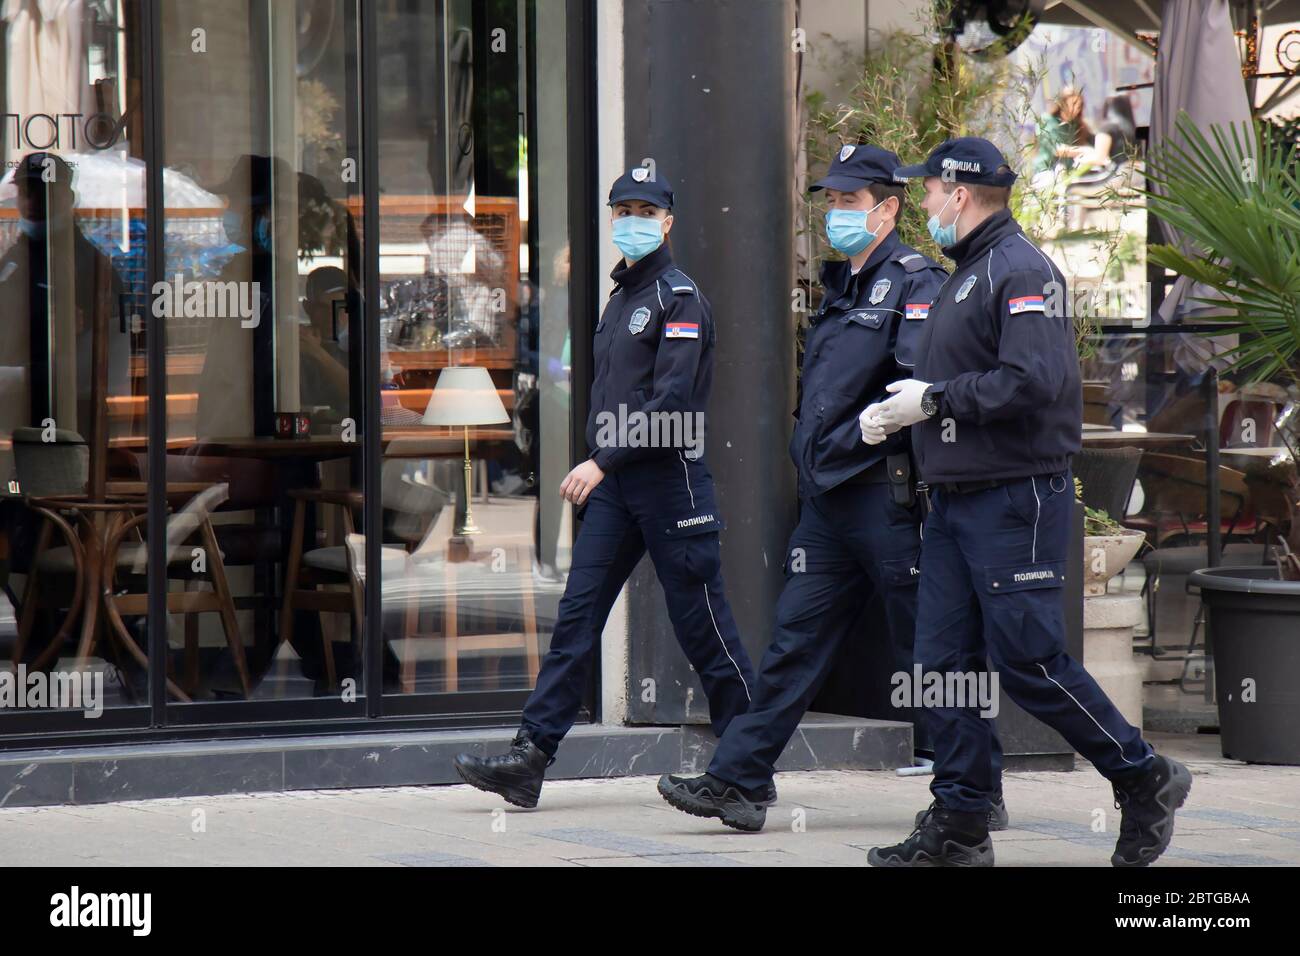 Belgrad, Serbien - 21. Mai 2020: Polizistin und Polizisten im Dienst, die chirurgische Gesichtsmasken tragen, während sie die Straßen der Stadt gehen und sprechen Stockfoto